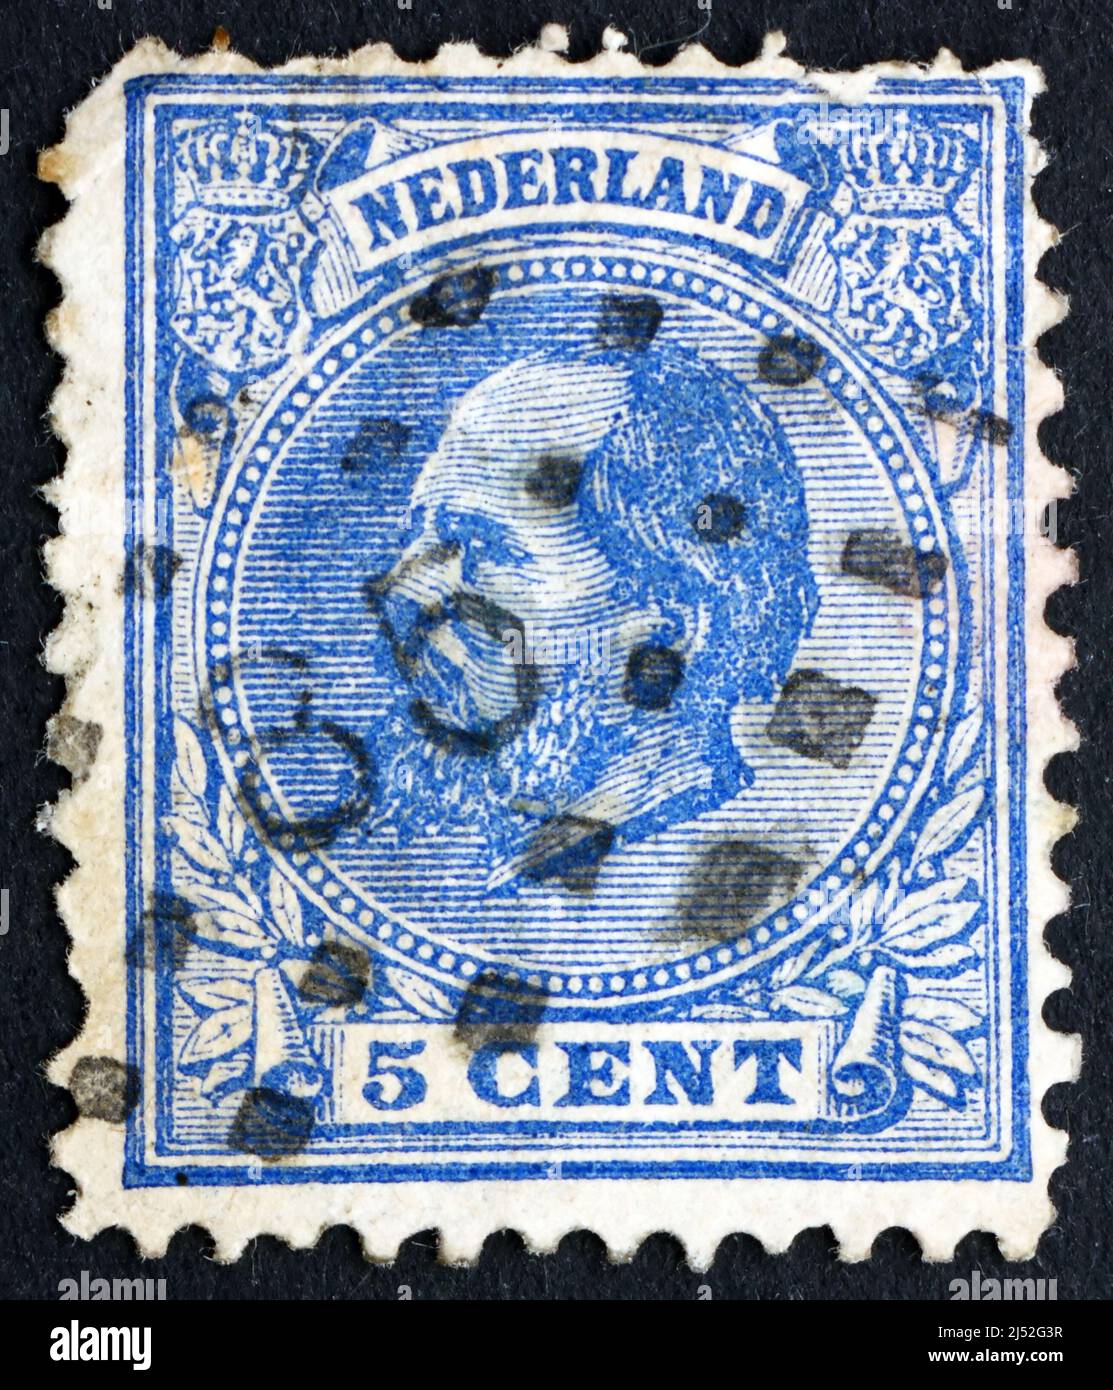 NIEDERLANDE - UM 1872: Eine in den Niederlanden gedruckte Briefmarke zeigt Wilhelm III., König der Niederlande, um 1872 Stockfoto